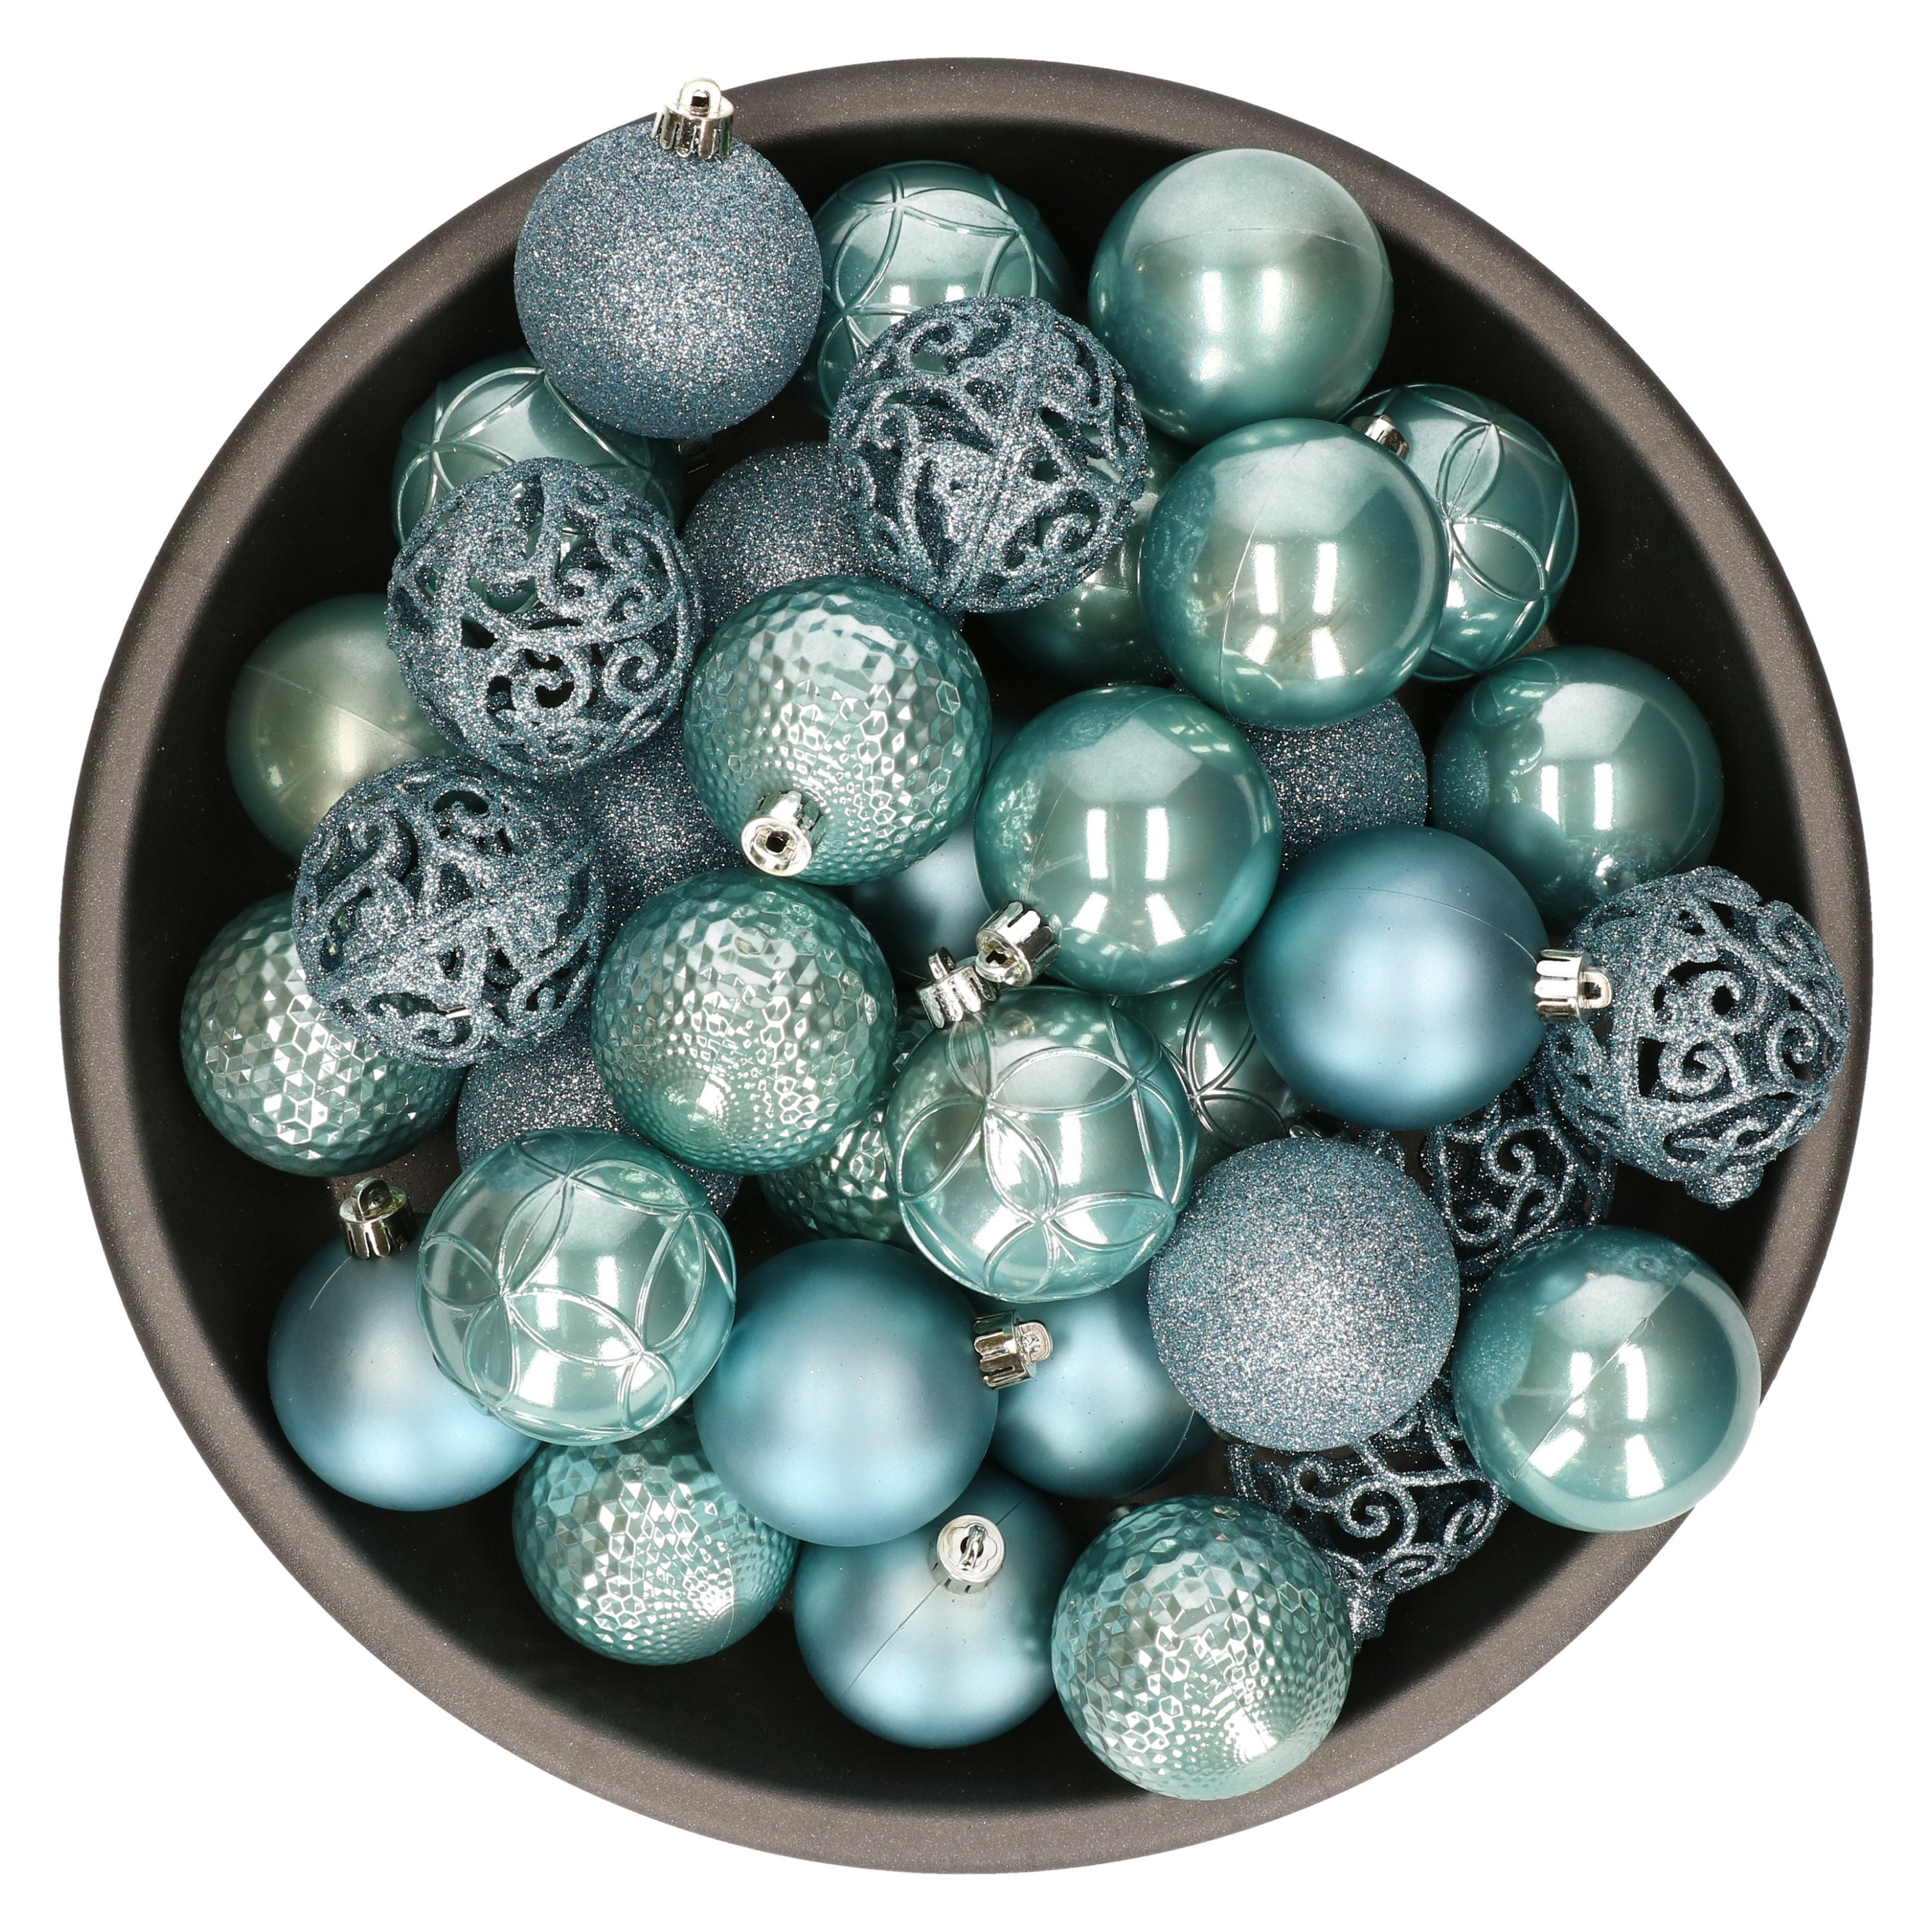 37x stuks kunststof kerstballen ijsblauw (arctic blue) 6 cm glans-mat-glitter mix